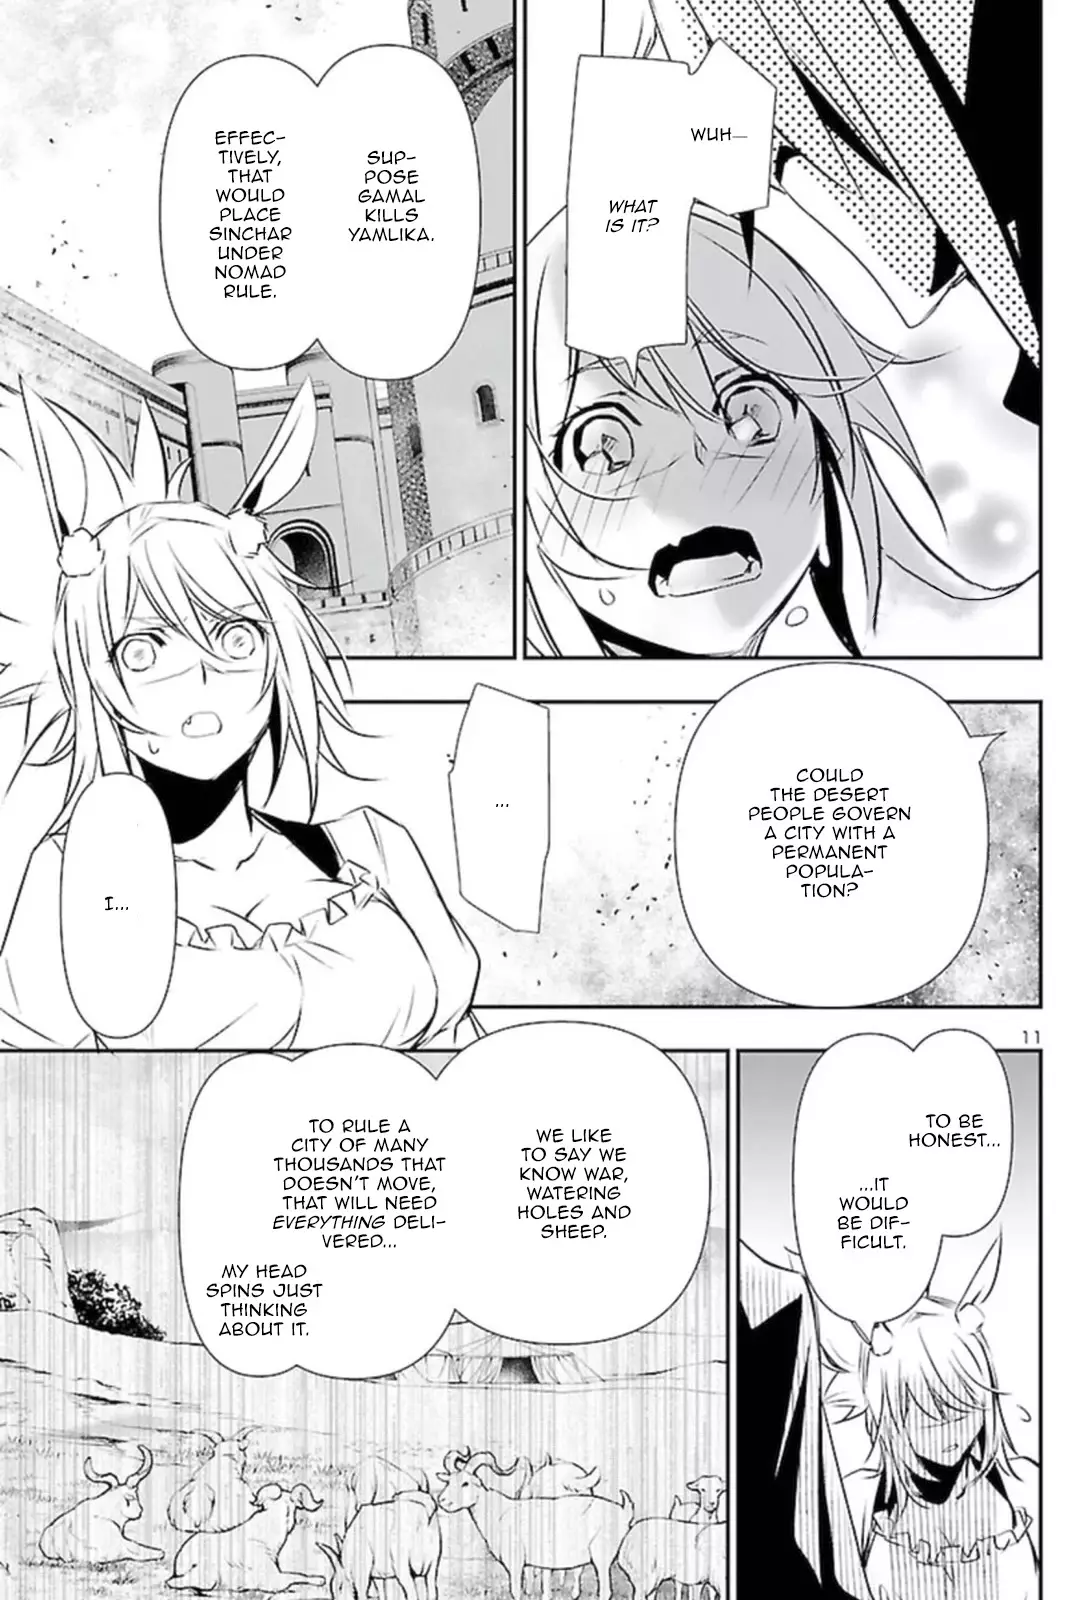 Shinju no Nectar - 62 page 10-46829a52